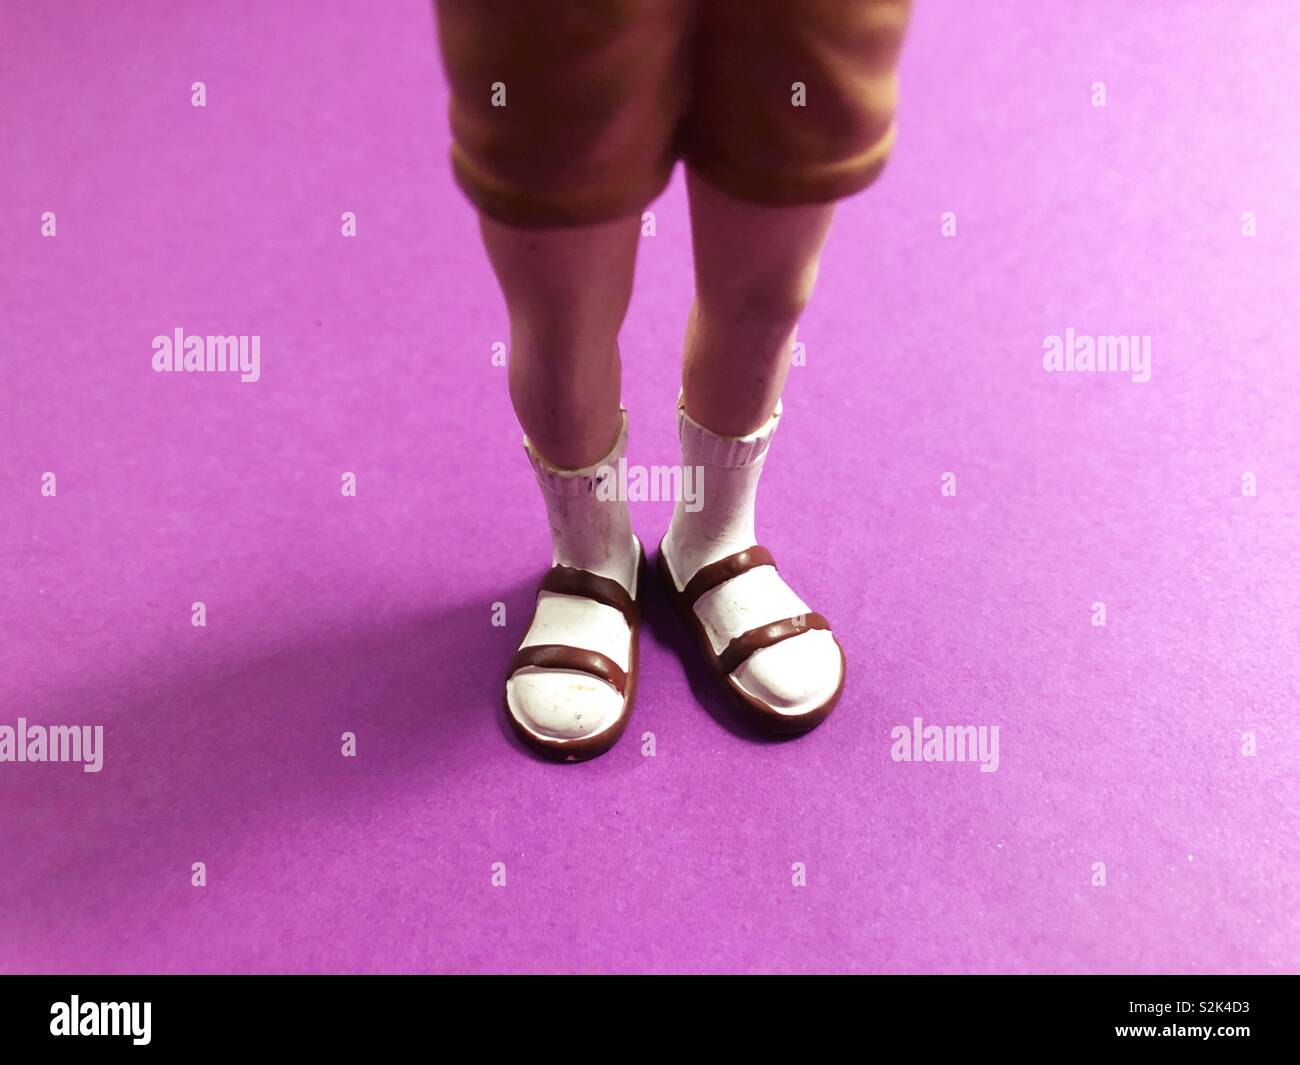 Abbildung des Menschen Socken mit Sandalen tragen. Stockfoto